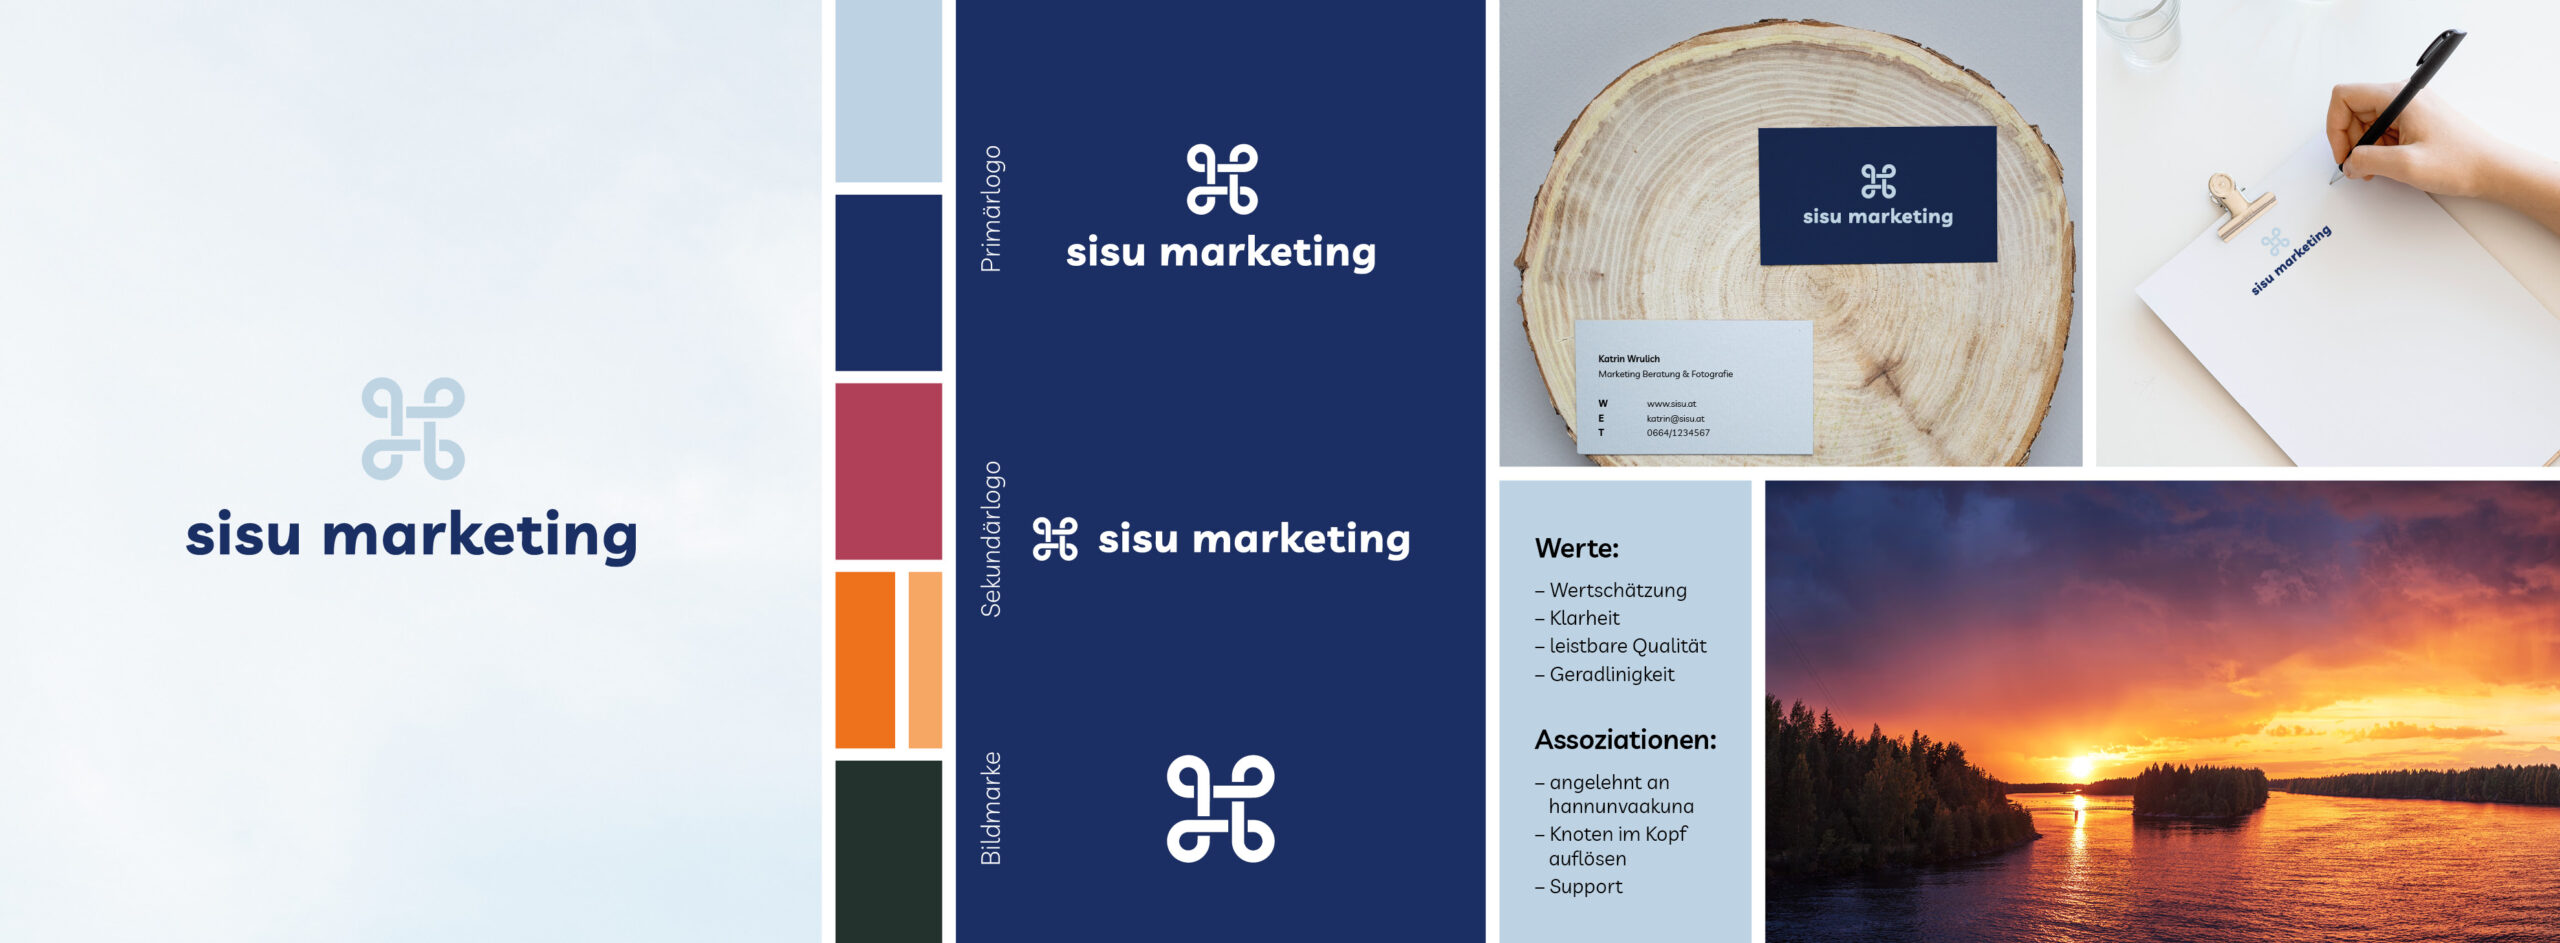 Brand Design Case Study - sisu marketing, gezeigt wird das primäre logo, sekundäre logo und bildmarke, die werte, assoziationen und anwendungsbeispiele